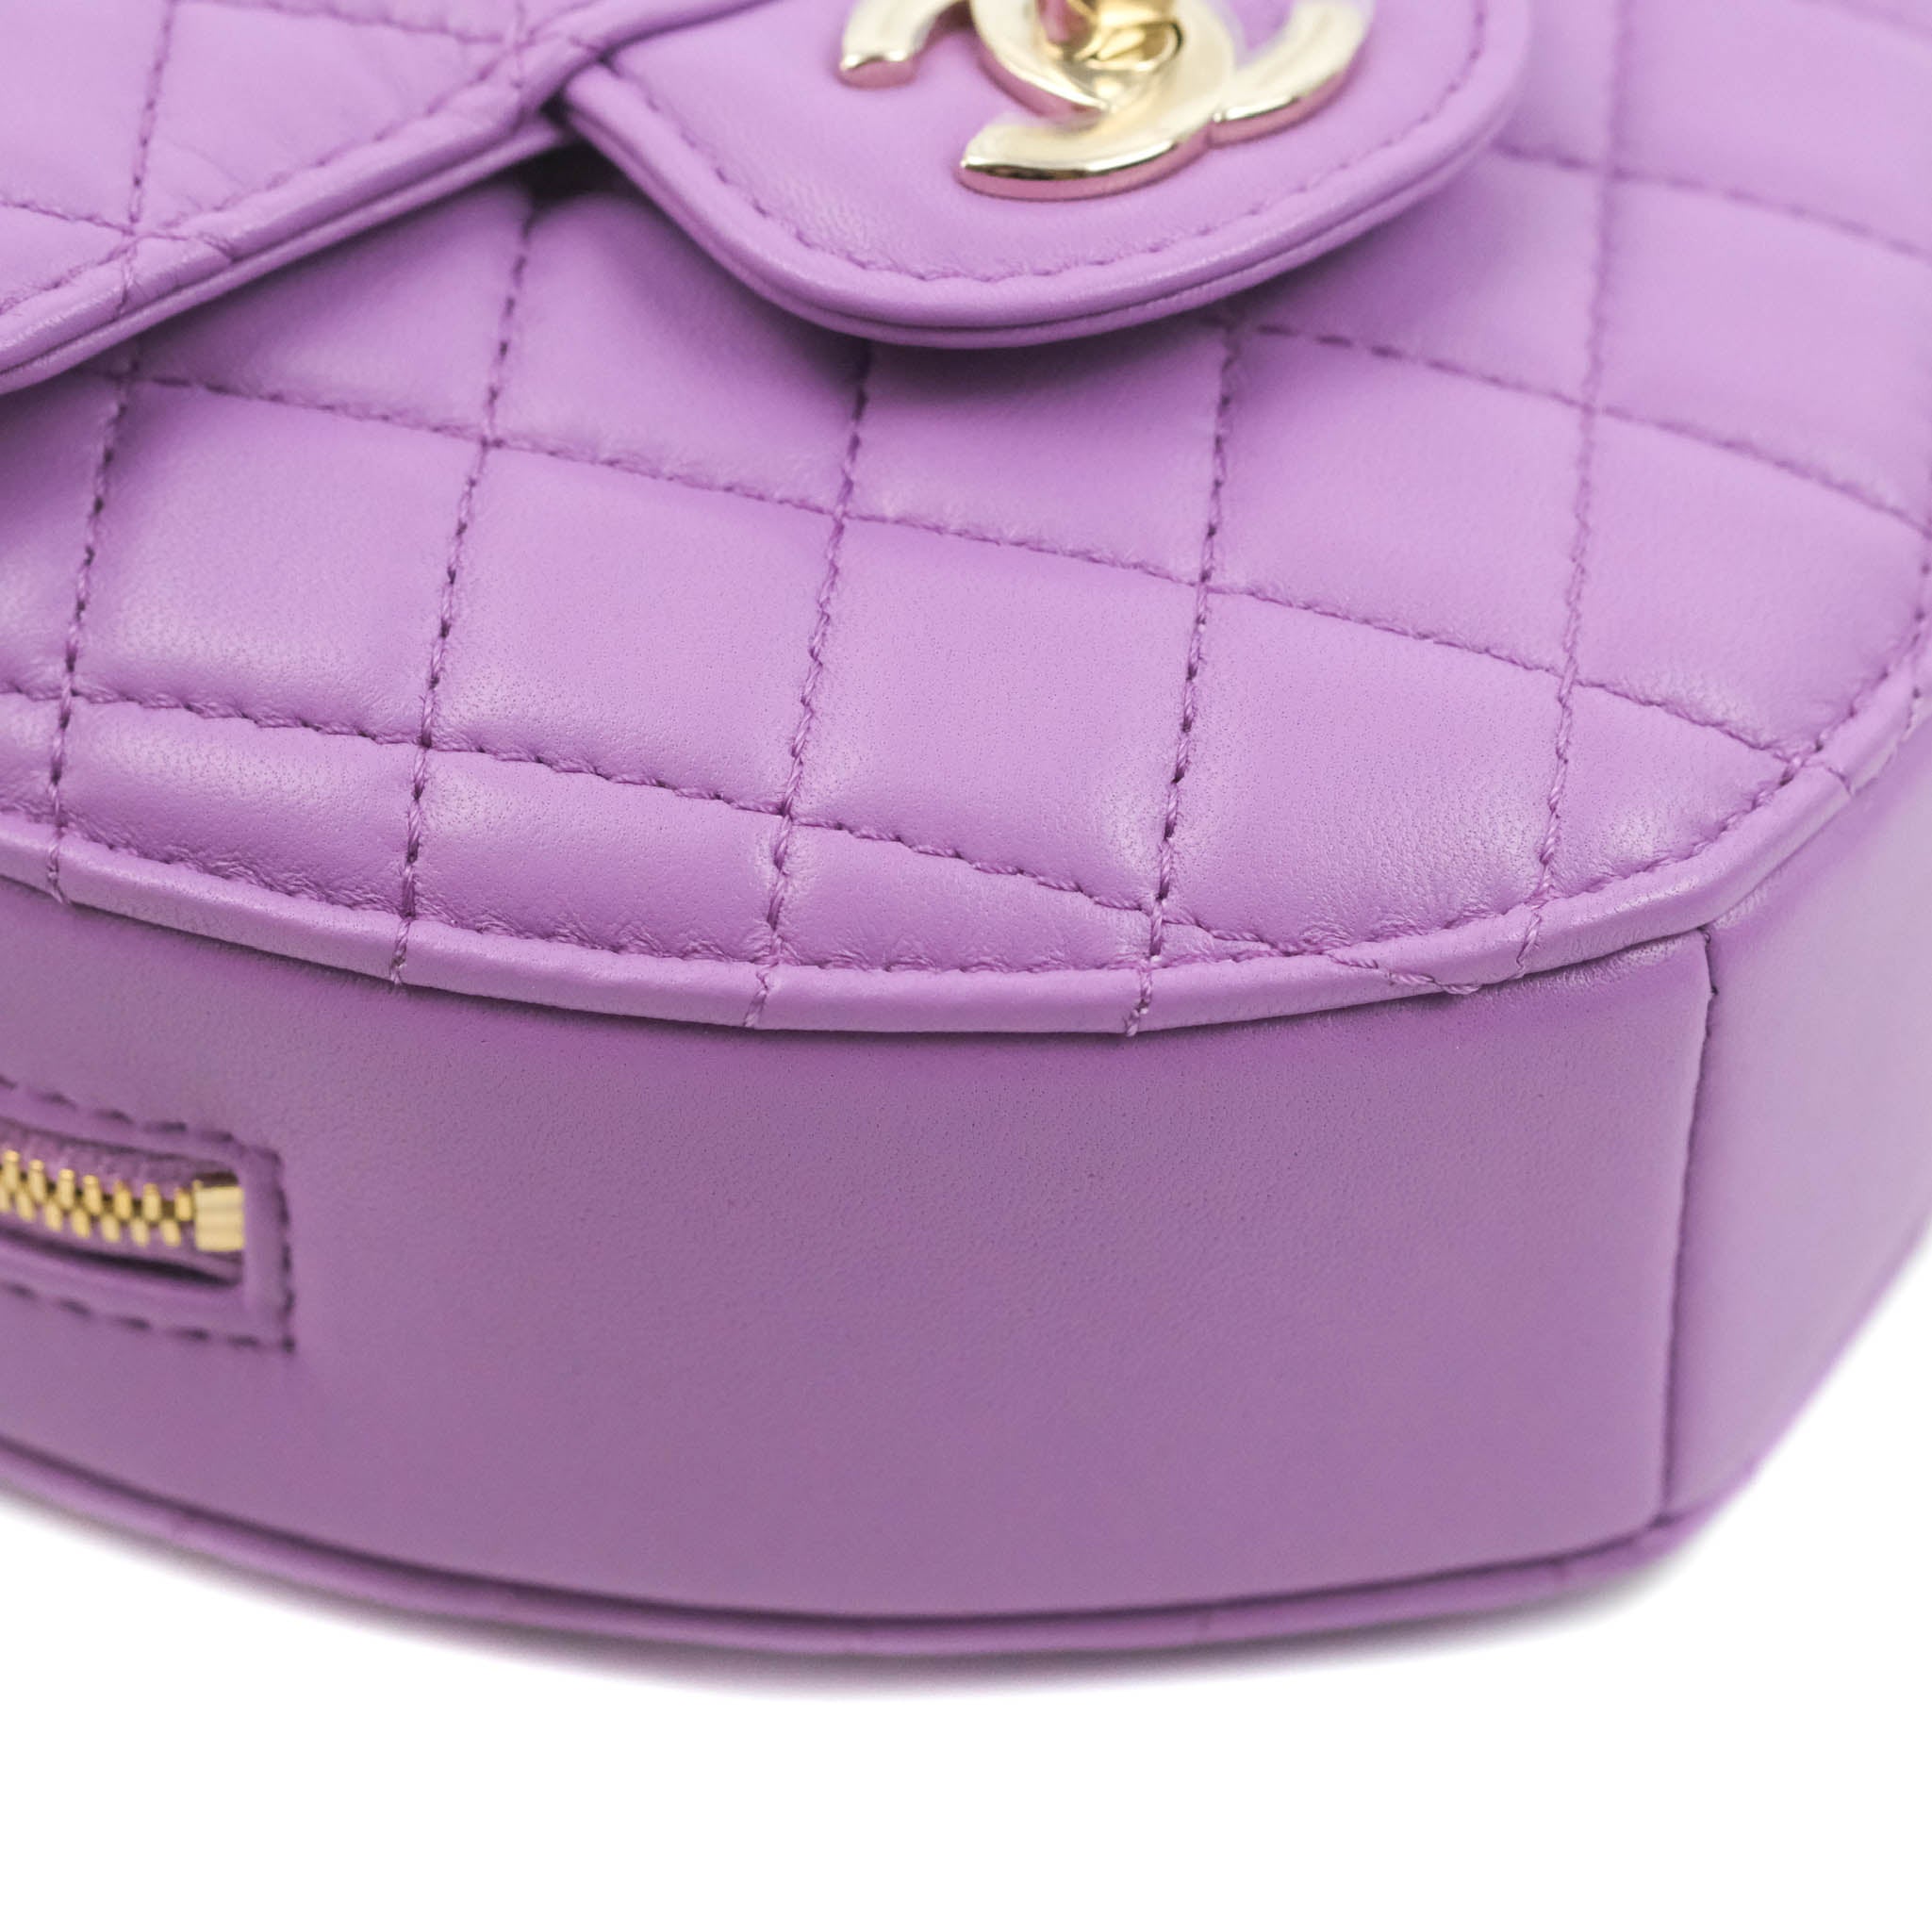 Chanel Heart Clutch With Chain 22S Purple Lambskin in Lambskin